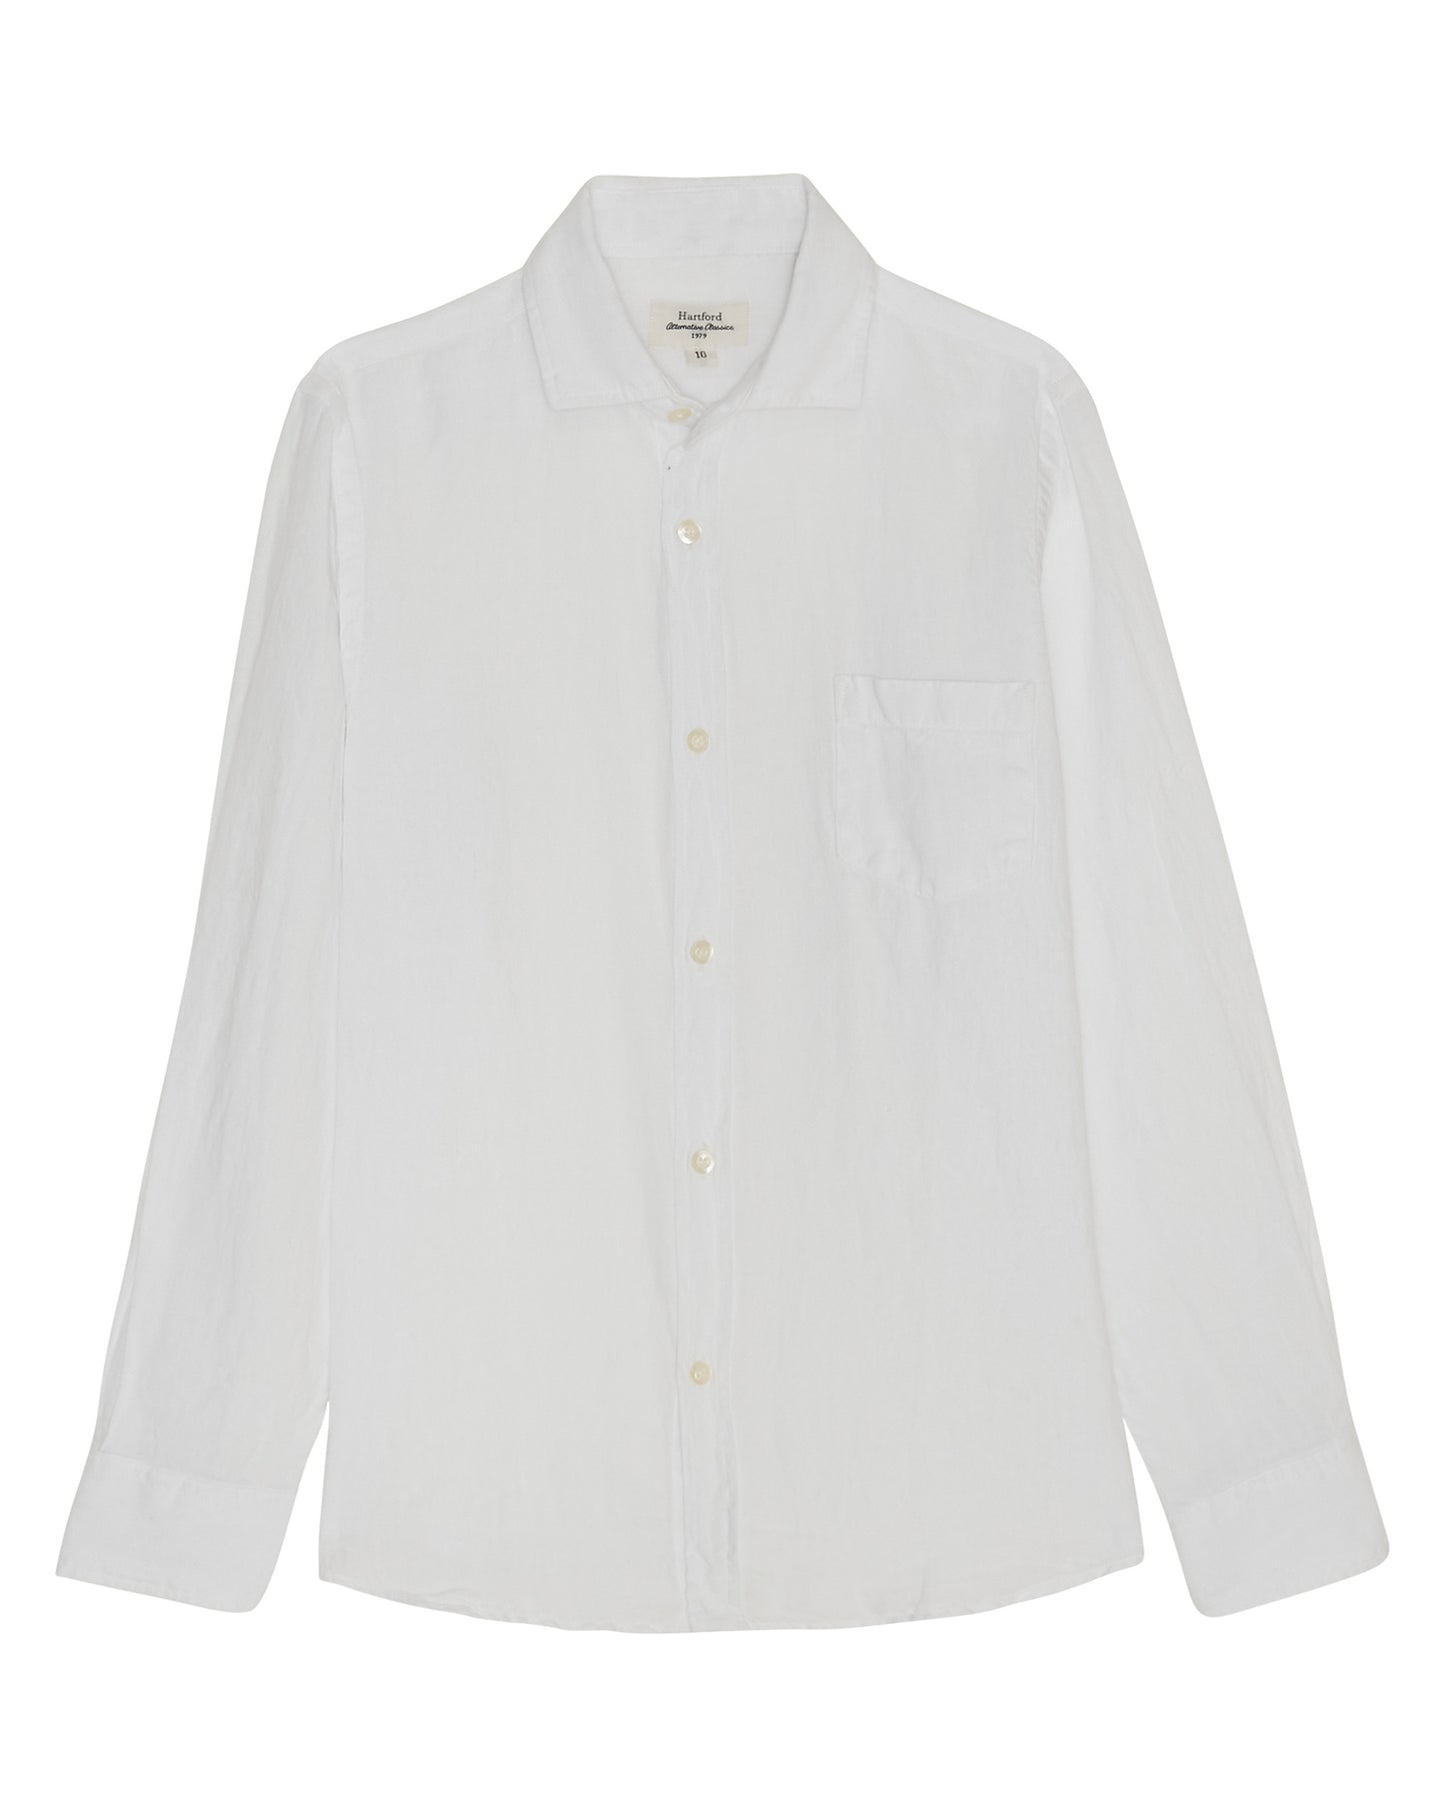 Paul Boys' White Linen Shirt